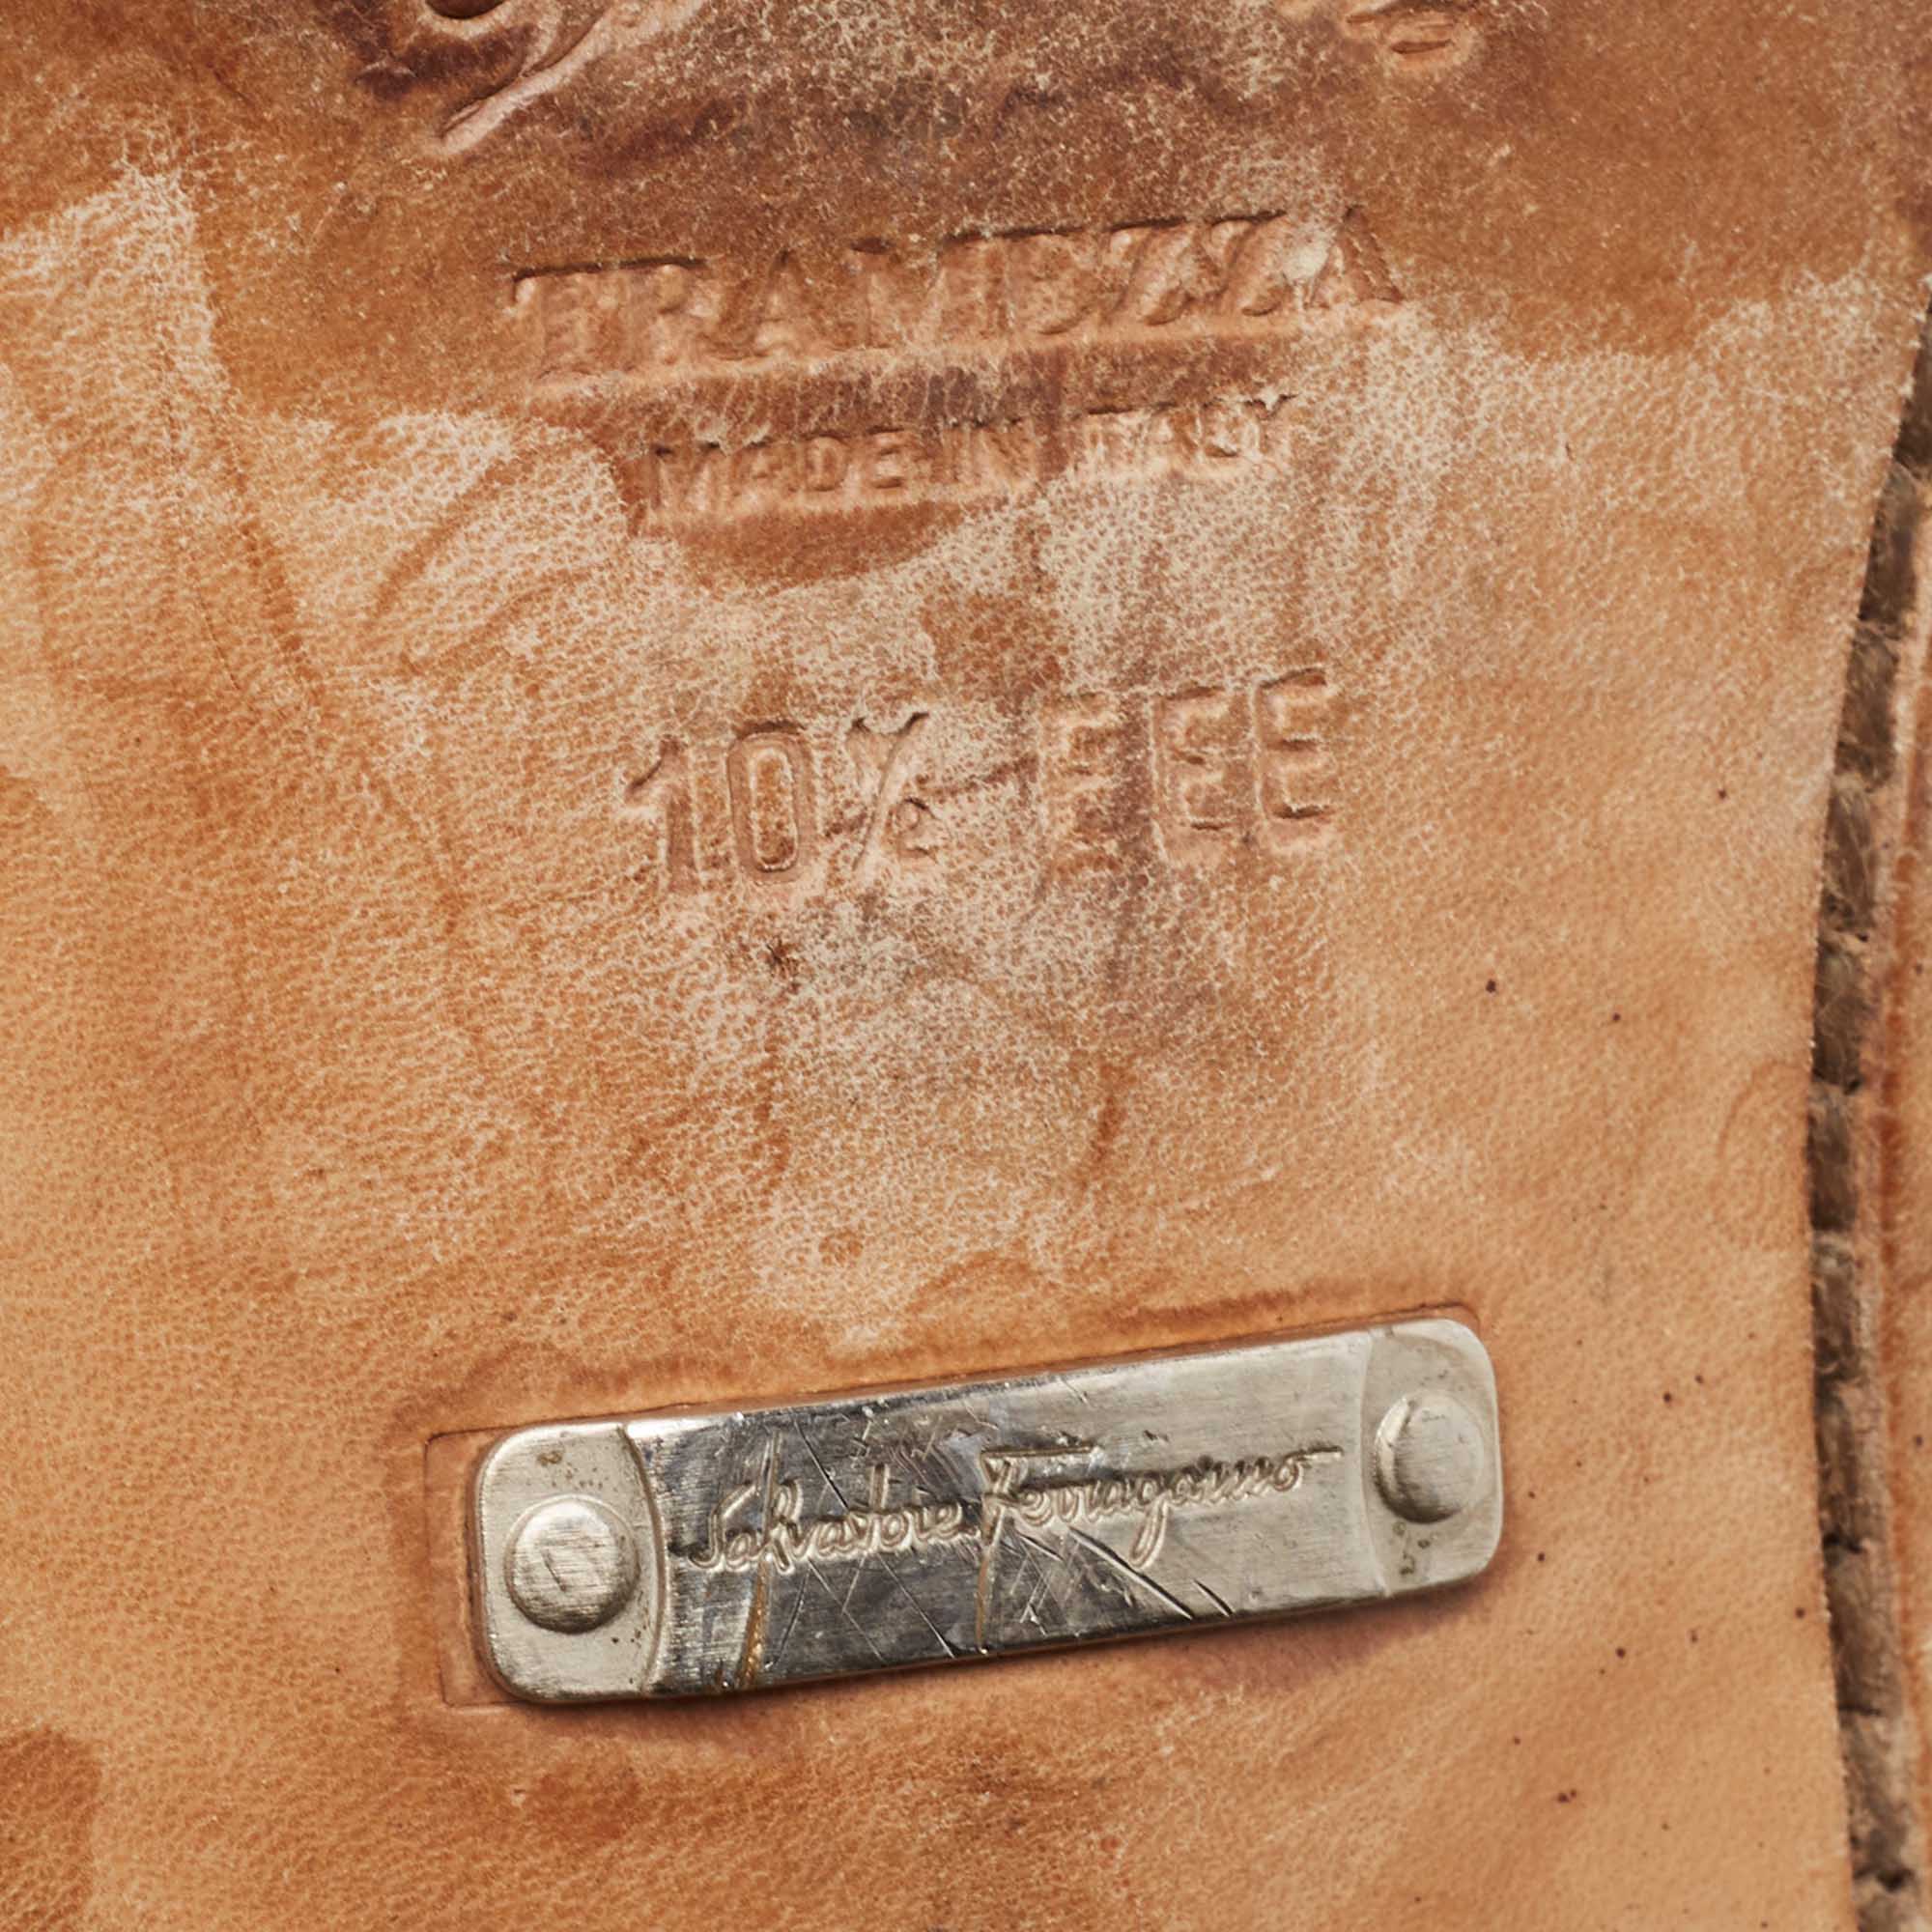 Salvatore Ferragamo Brown Leather Oxfords Size 44.5